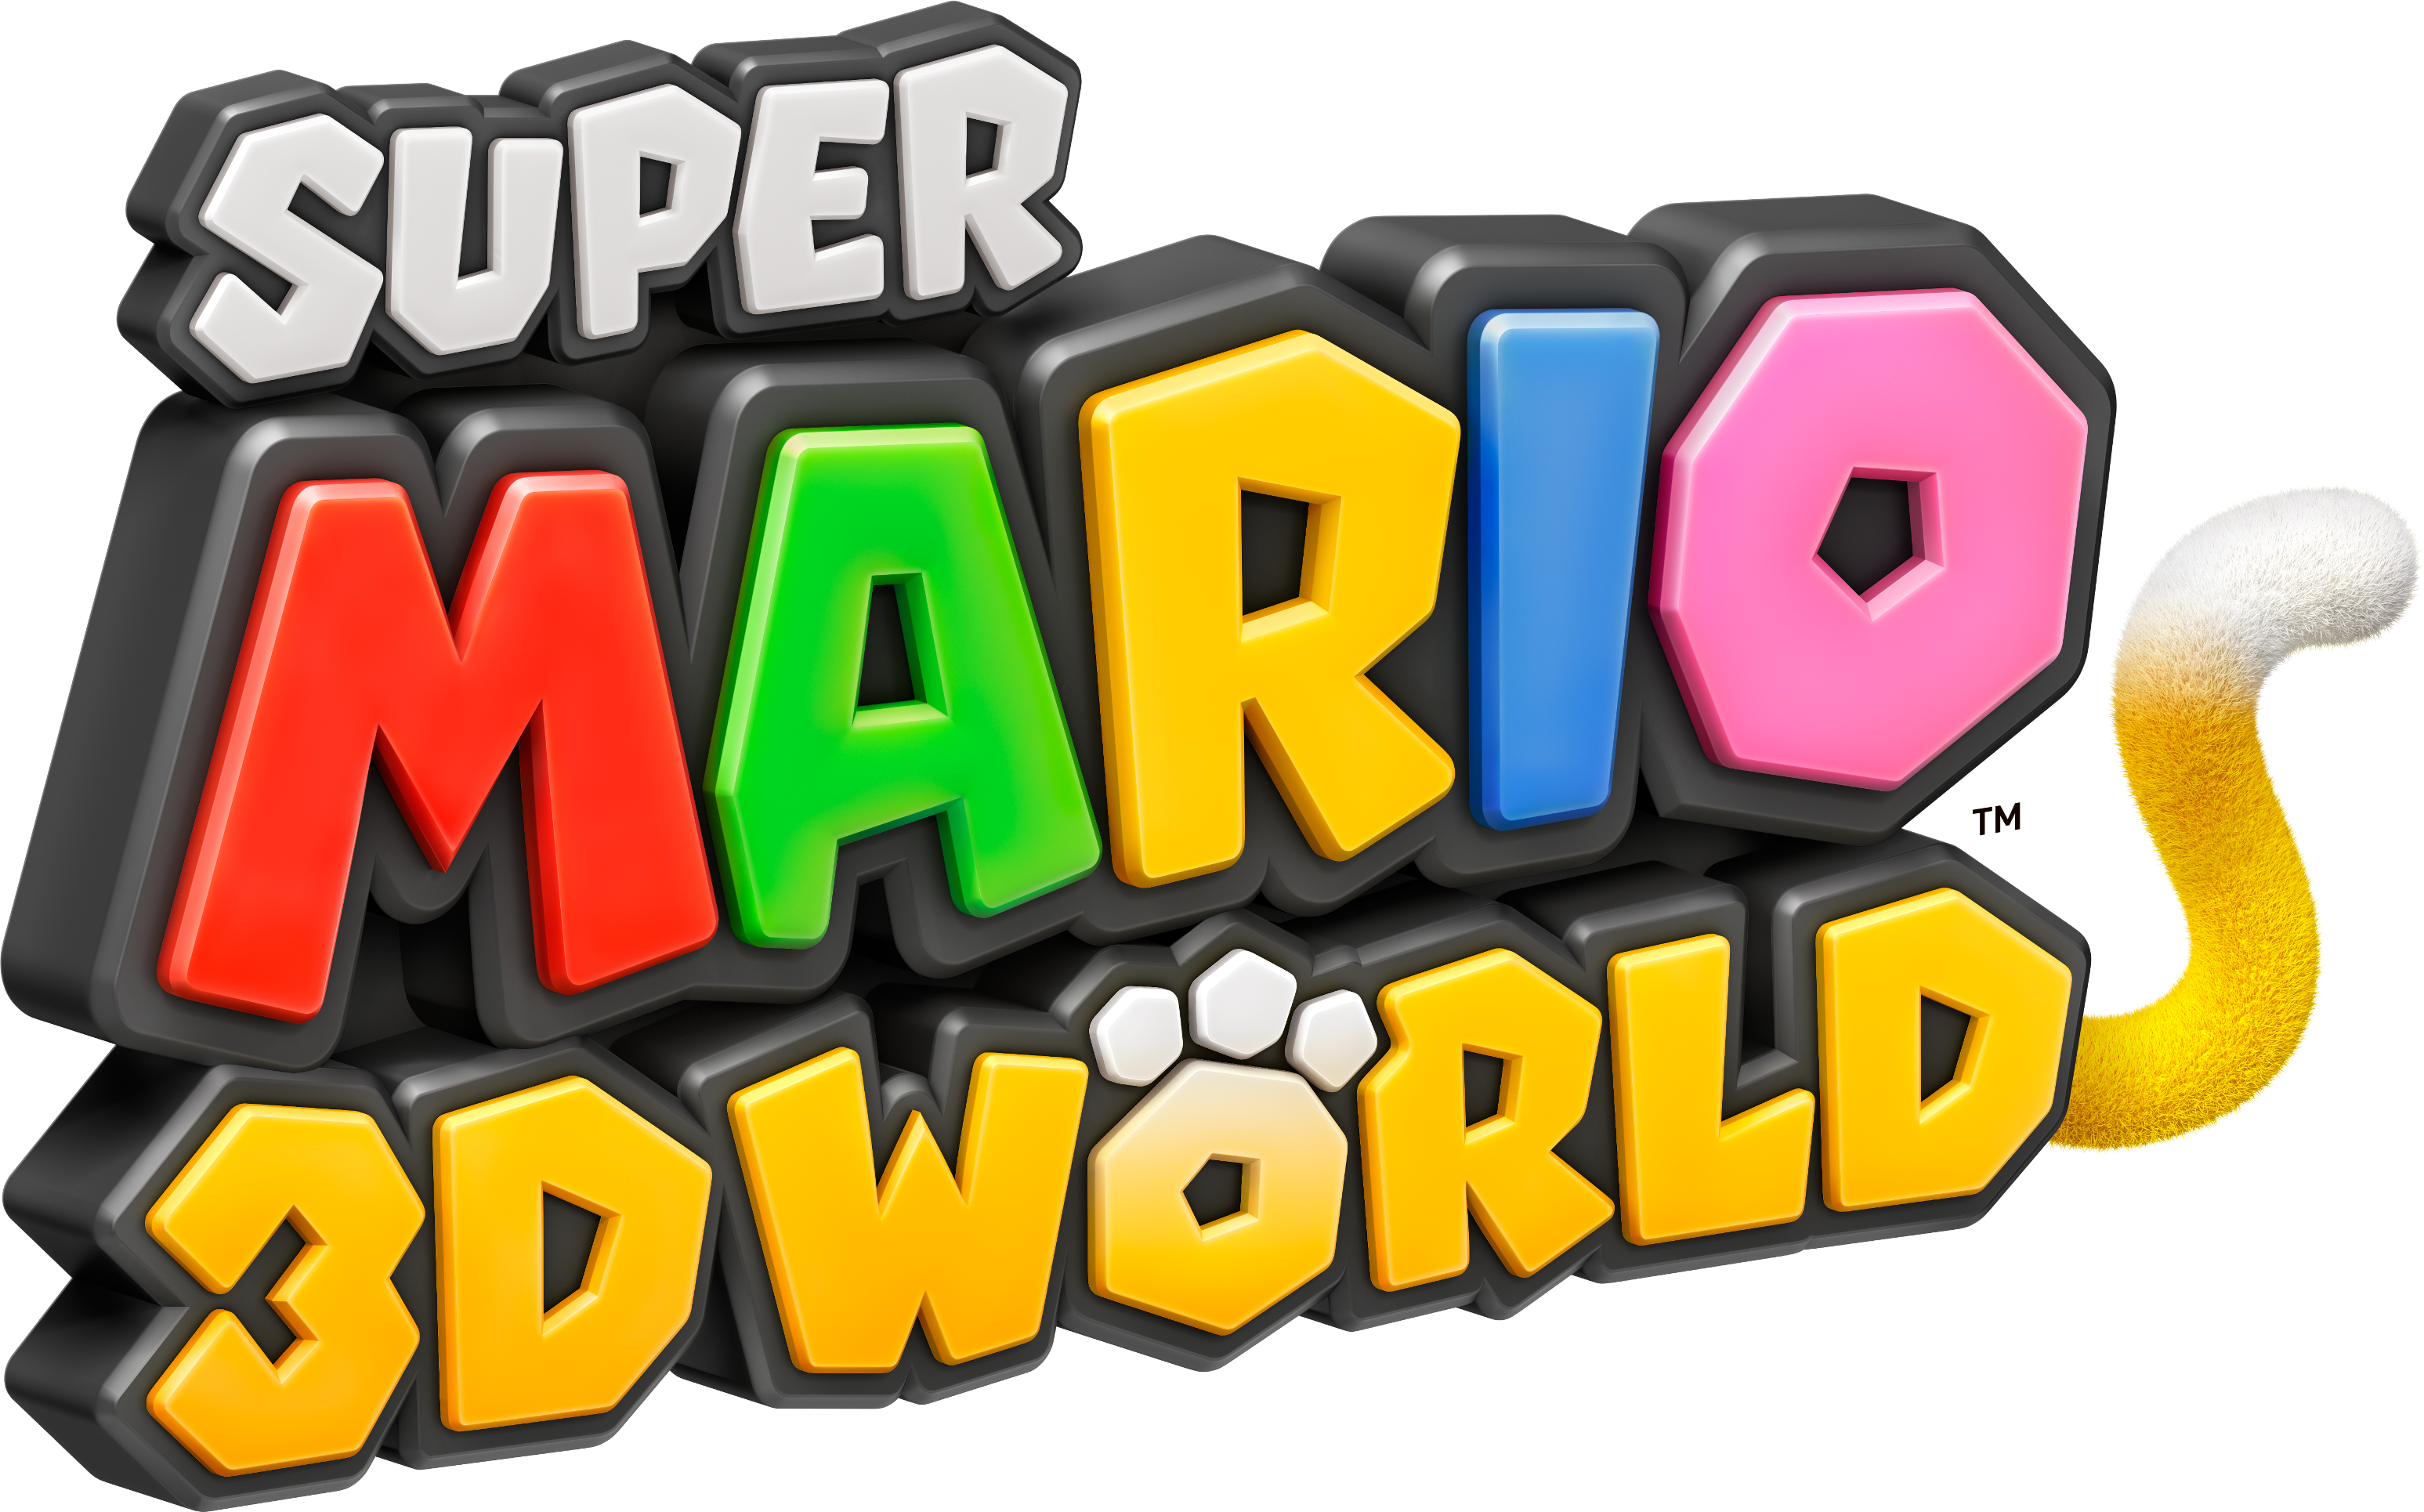 super mario 3d world for cemu